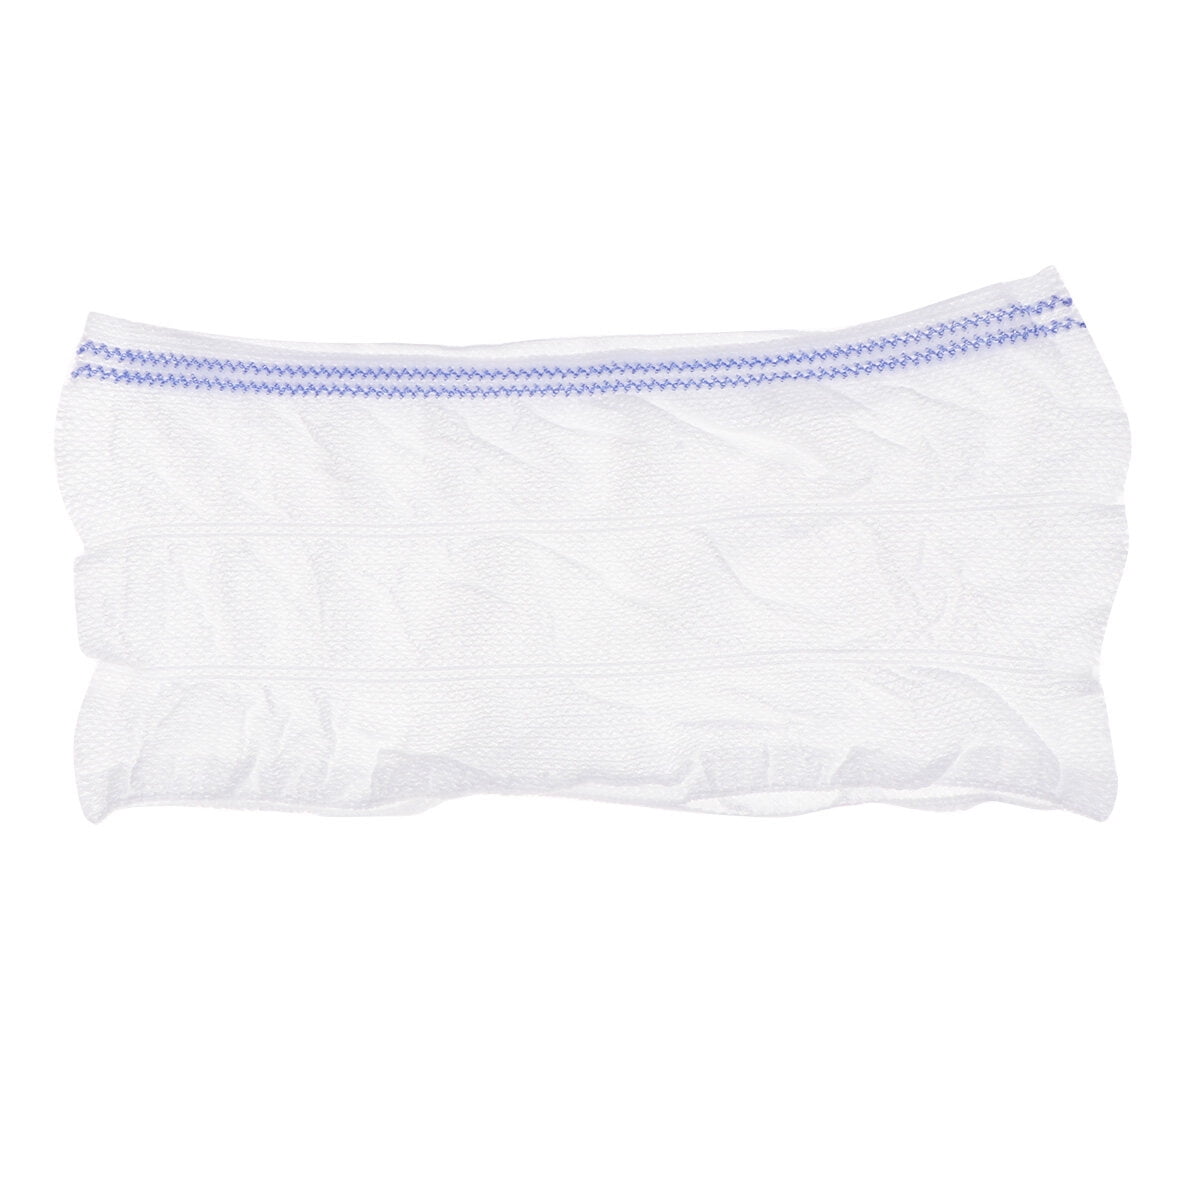 10 Count Mesh Underwear Postpartum Disposable Mauritius